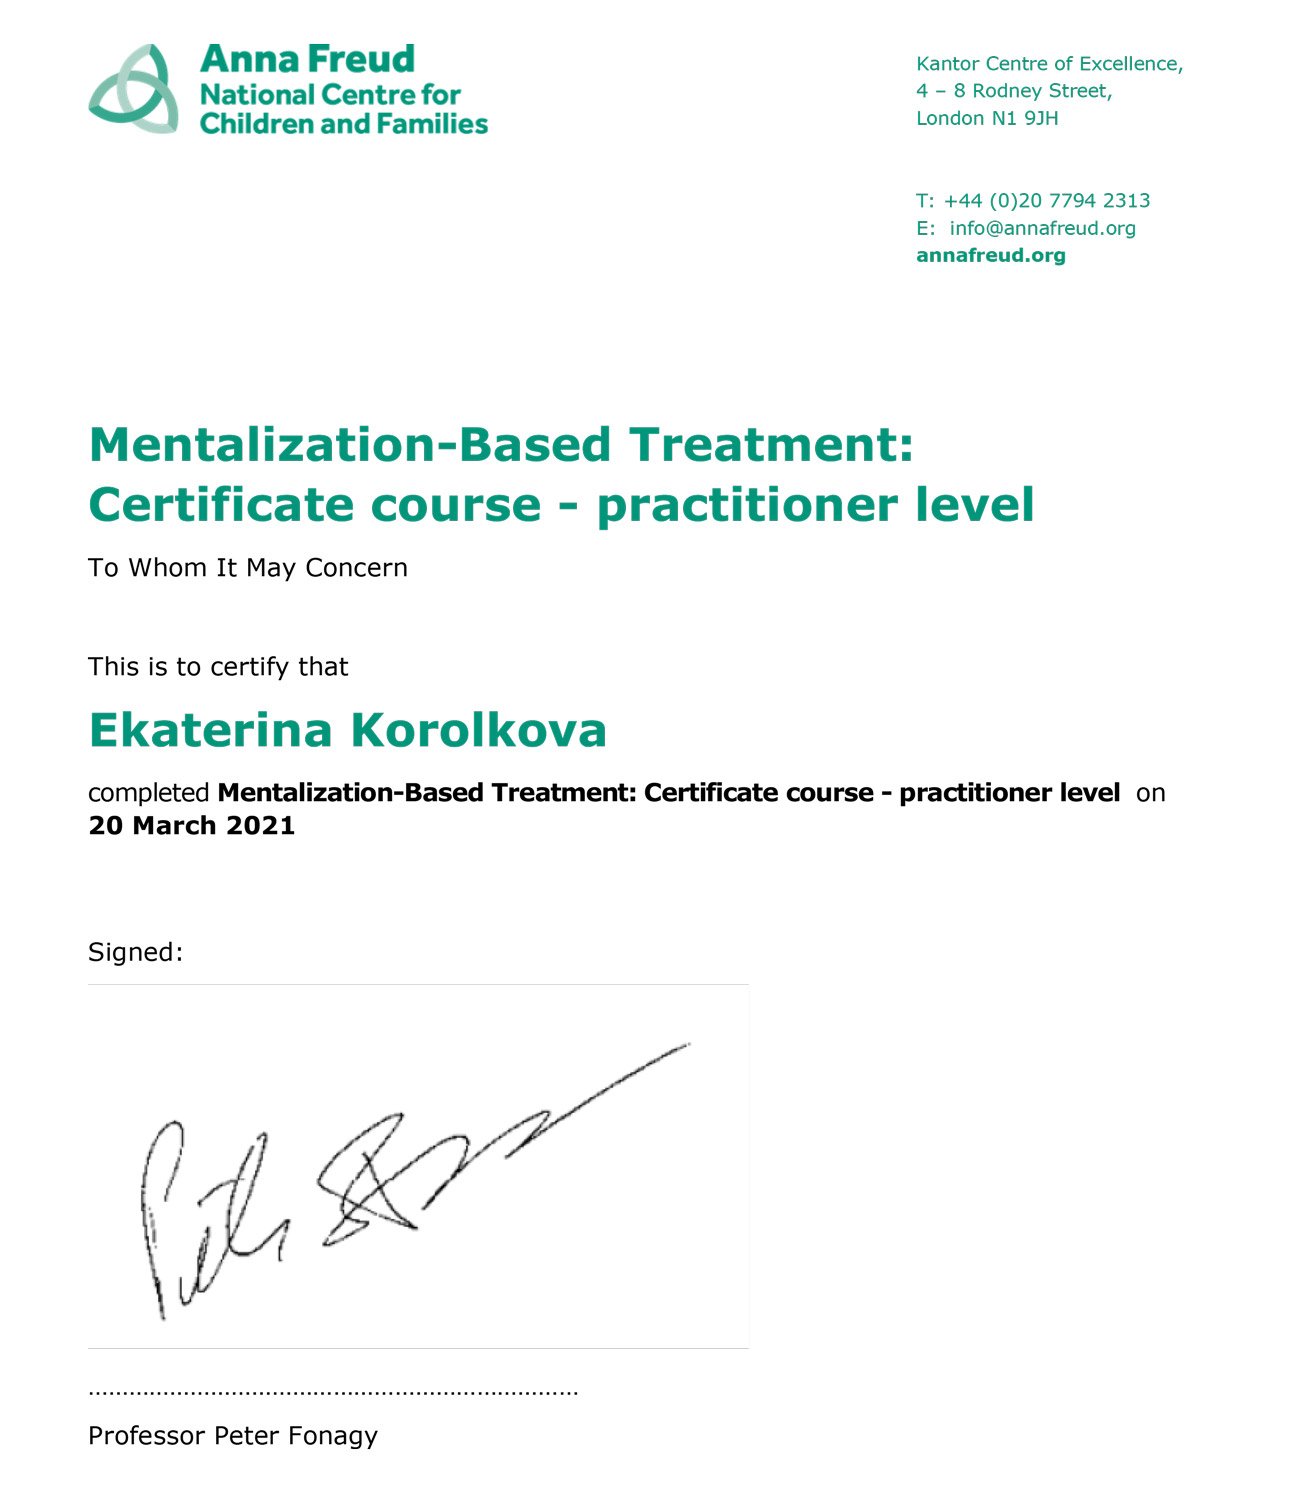 Ekaterina-Korolkova-Mentalization-Based-Treatment--Certificate-course---practitioner-level.jpg